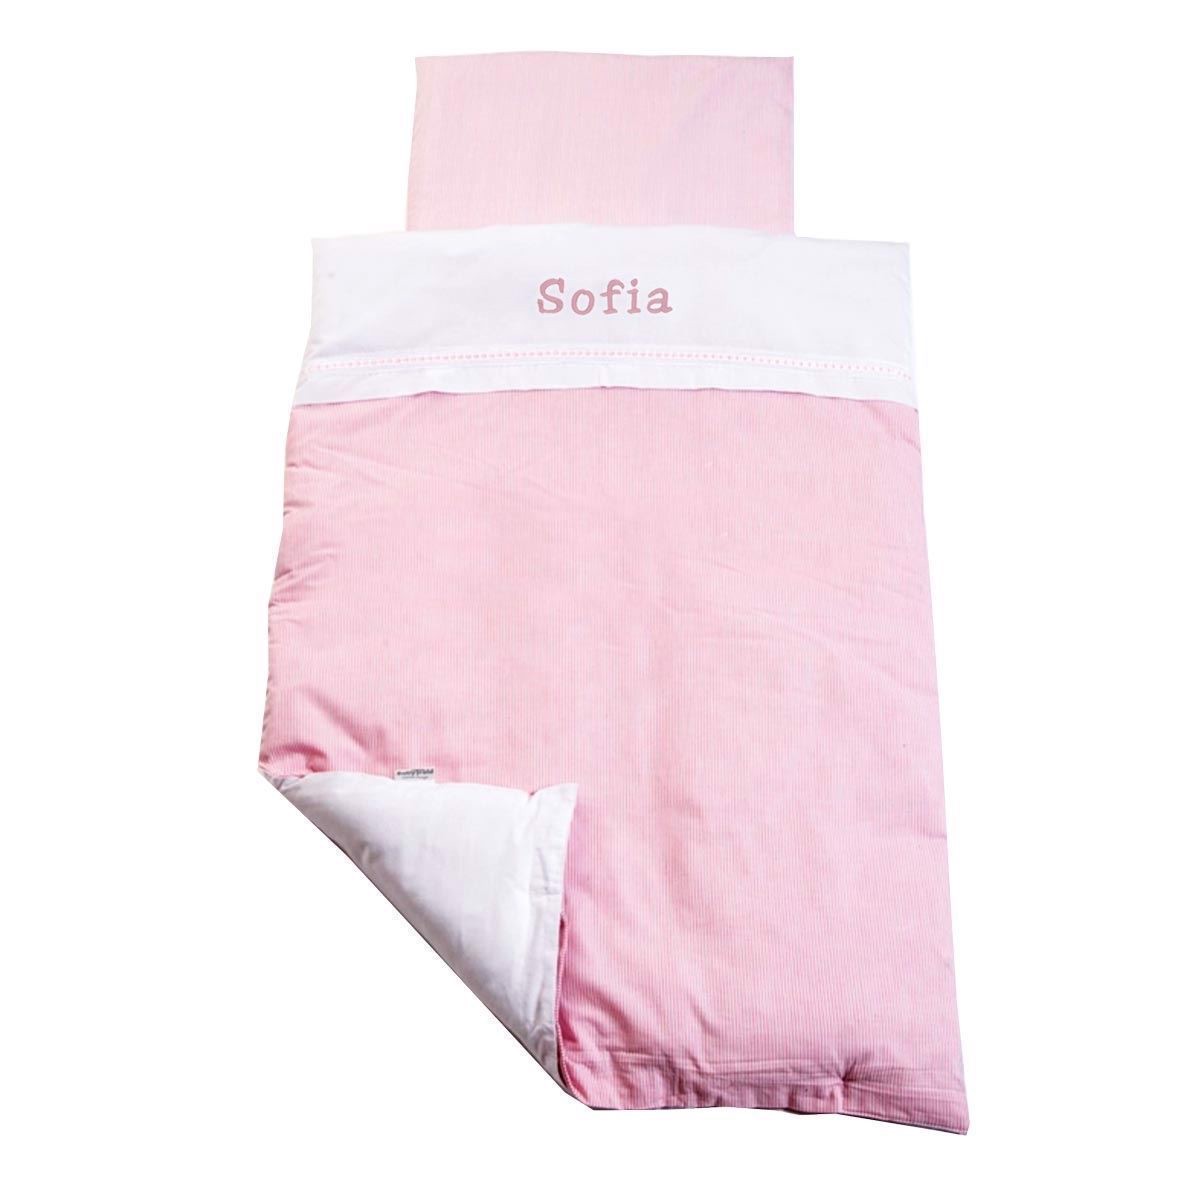 Baby sengetøj med navn. lyserød strib - med eller uden navn